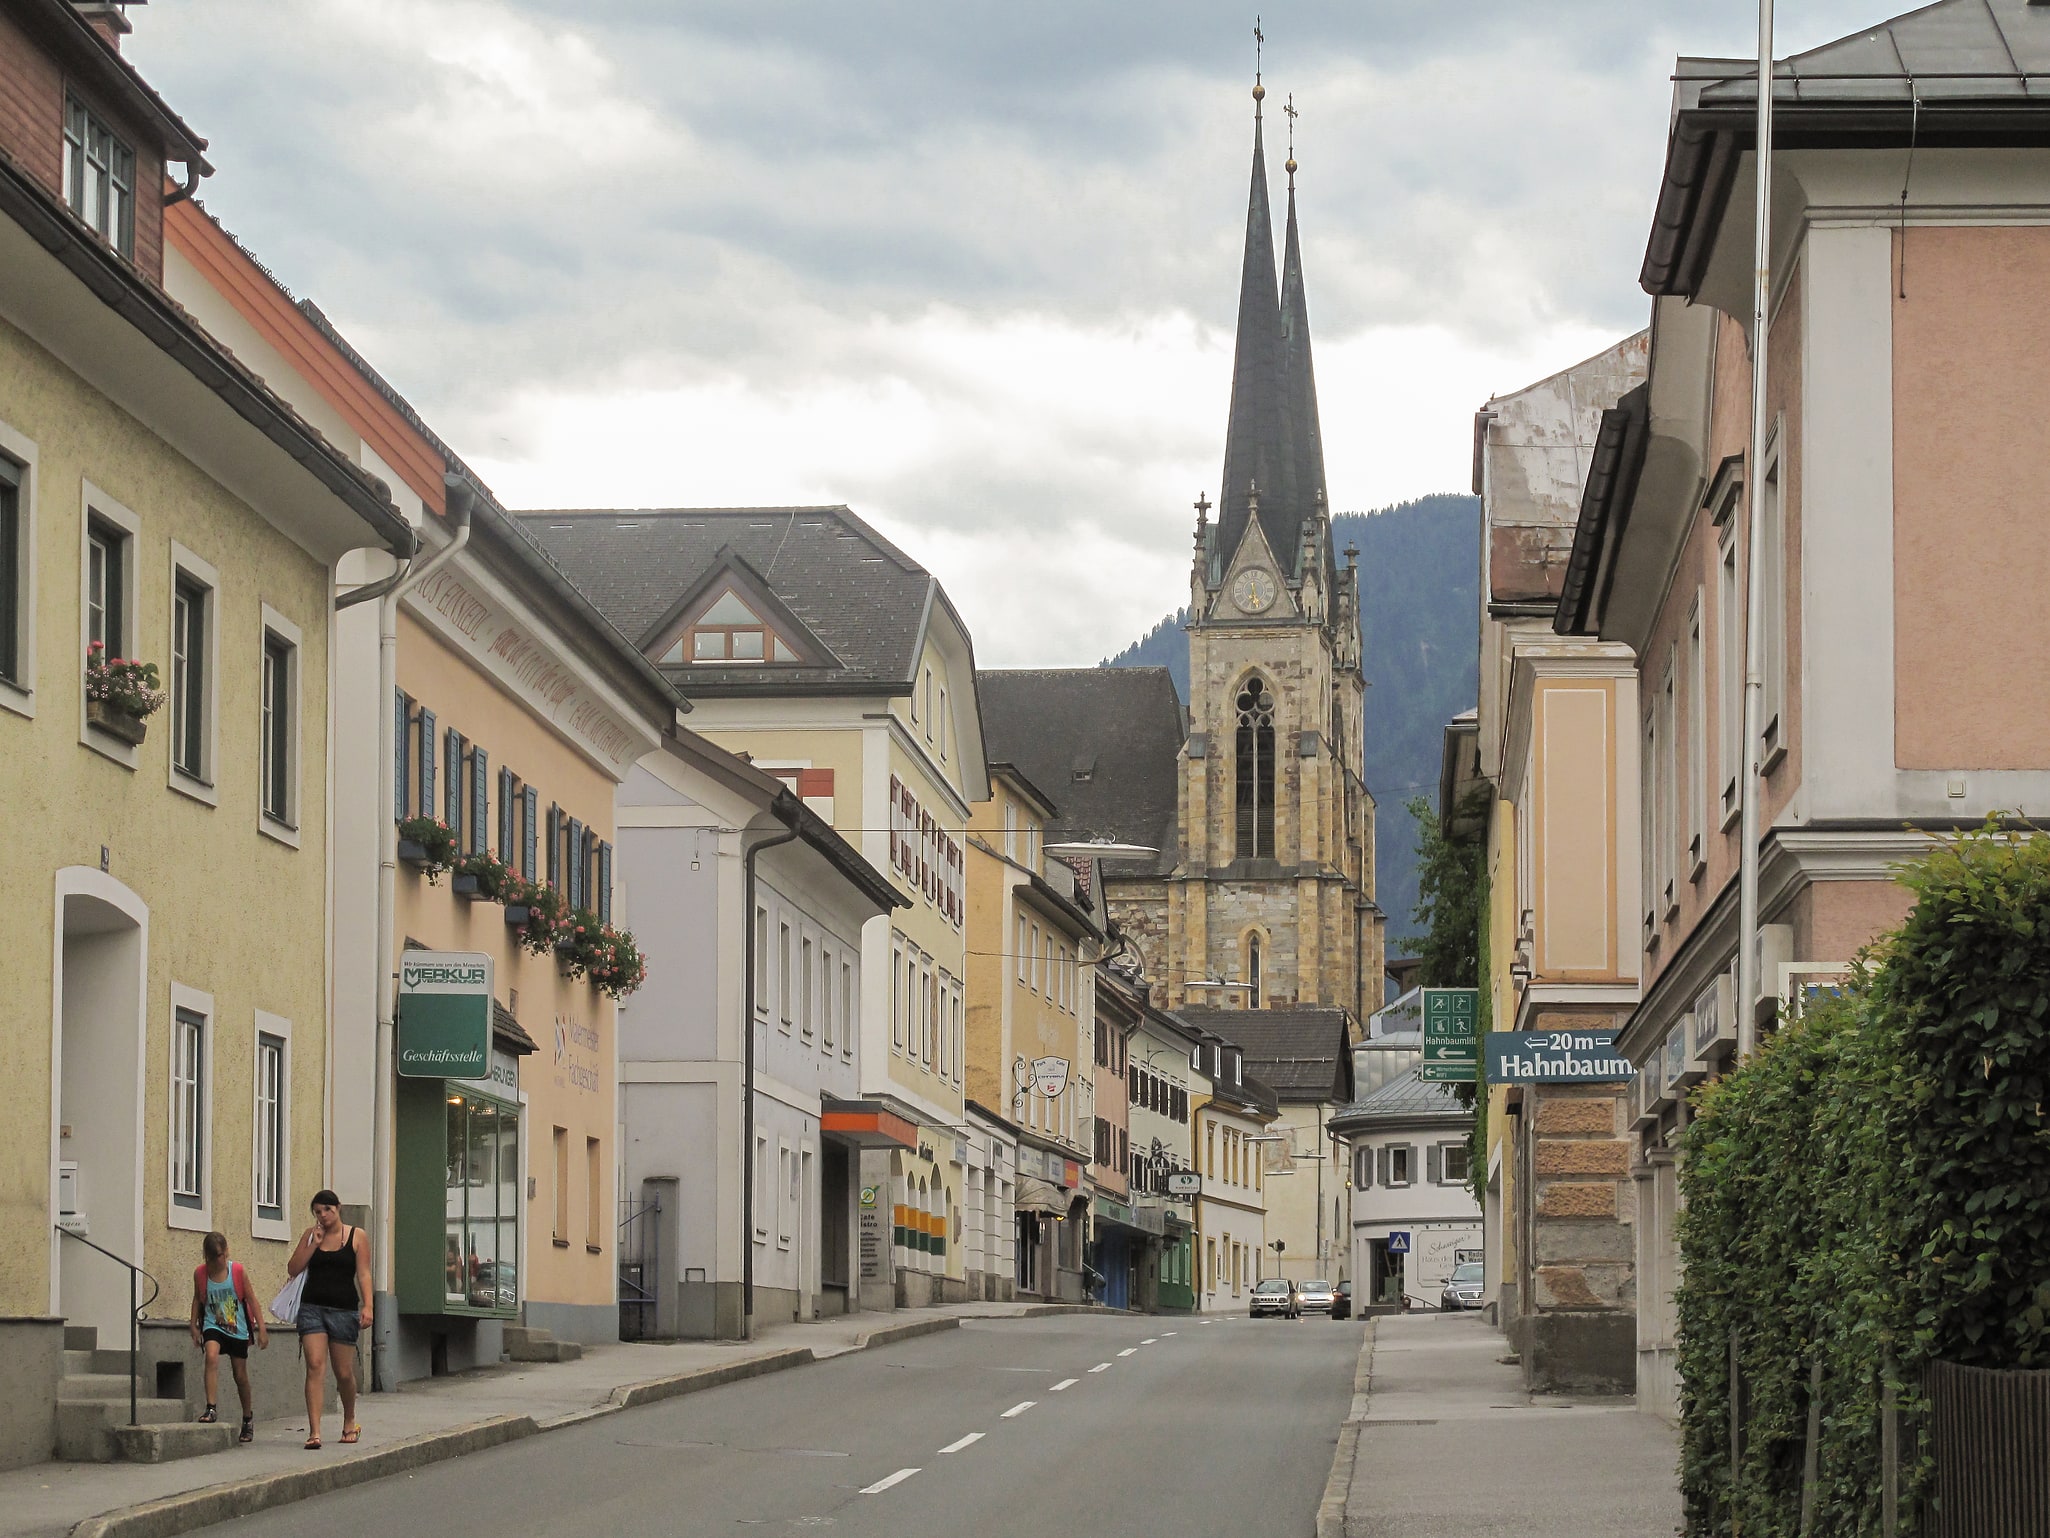 St. Johann im Pongau, Austria